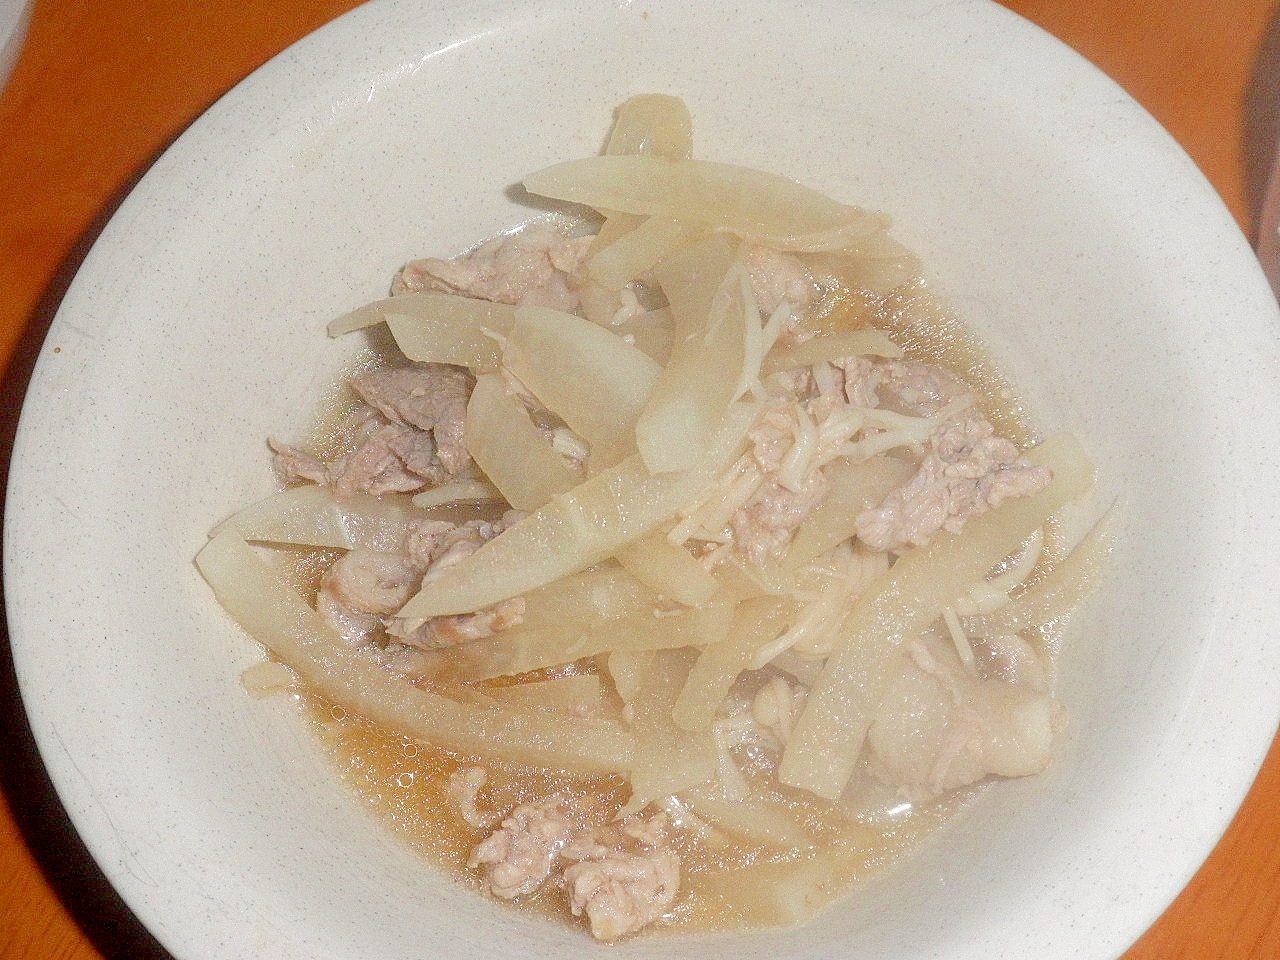 豚肉・大根・エノキのスープ煮